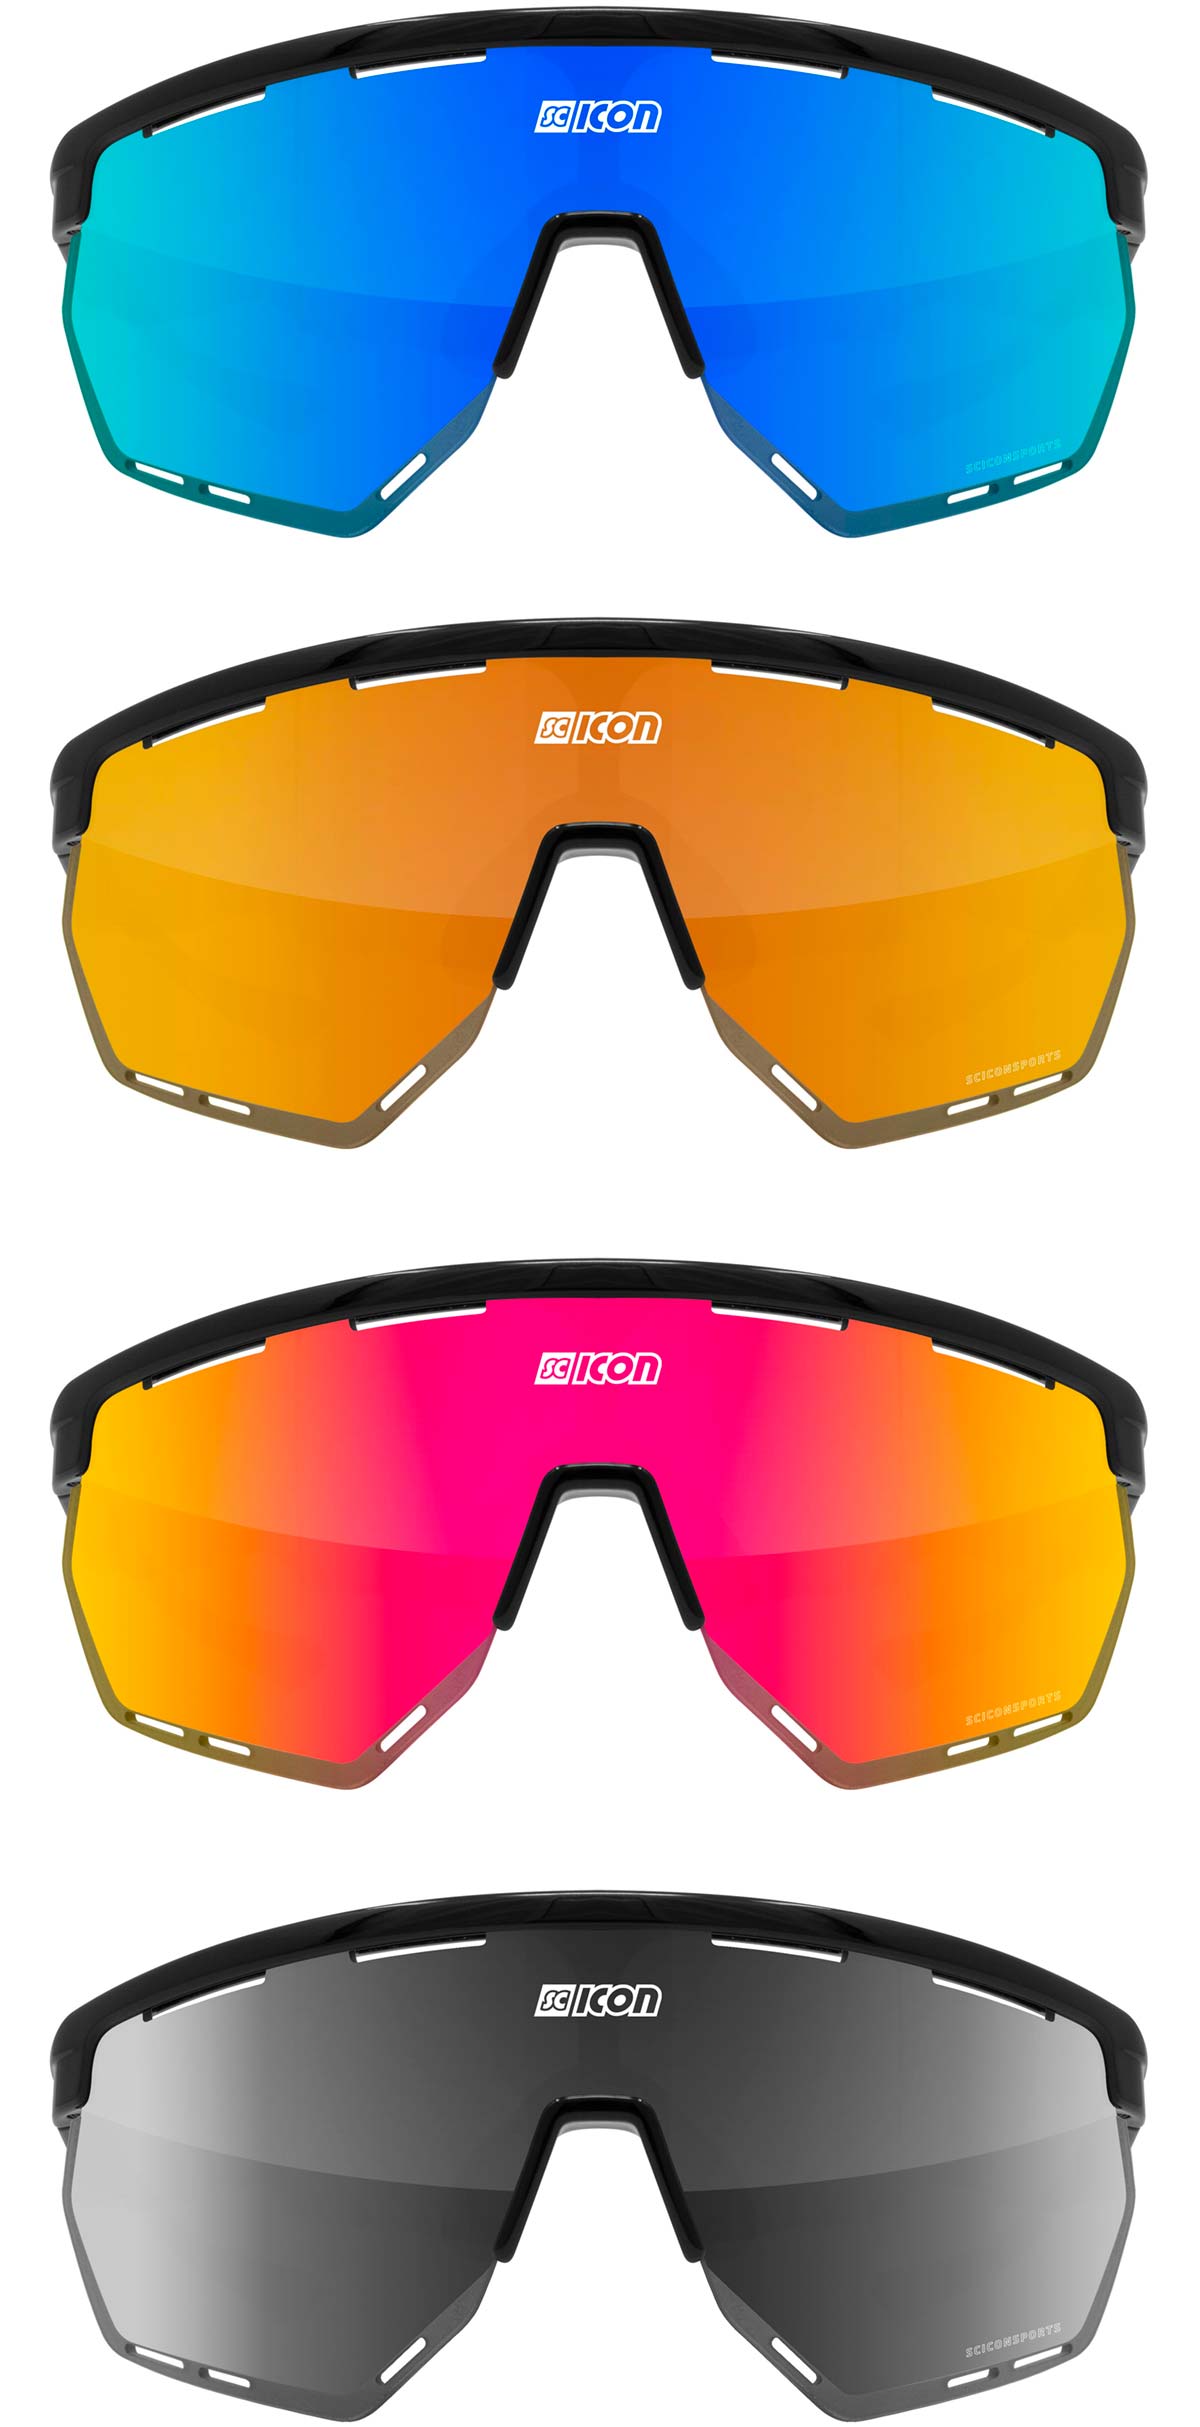 En TodoMountainBike: Scicon presenta las Aerowing y Aeroshade, sus nuevas gafas para ciclistas